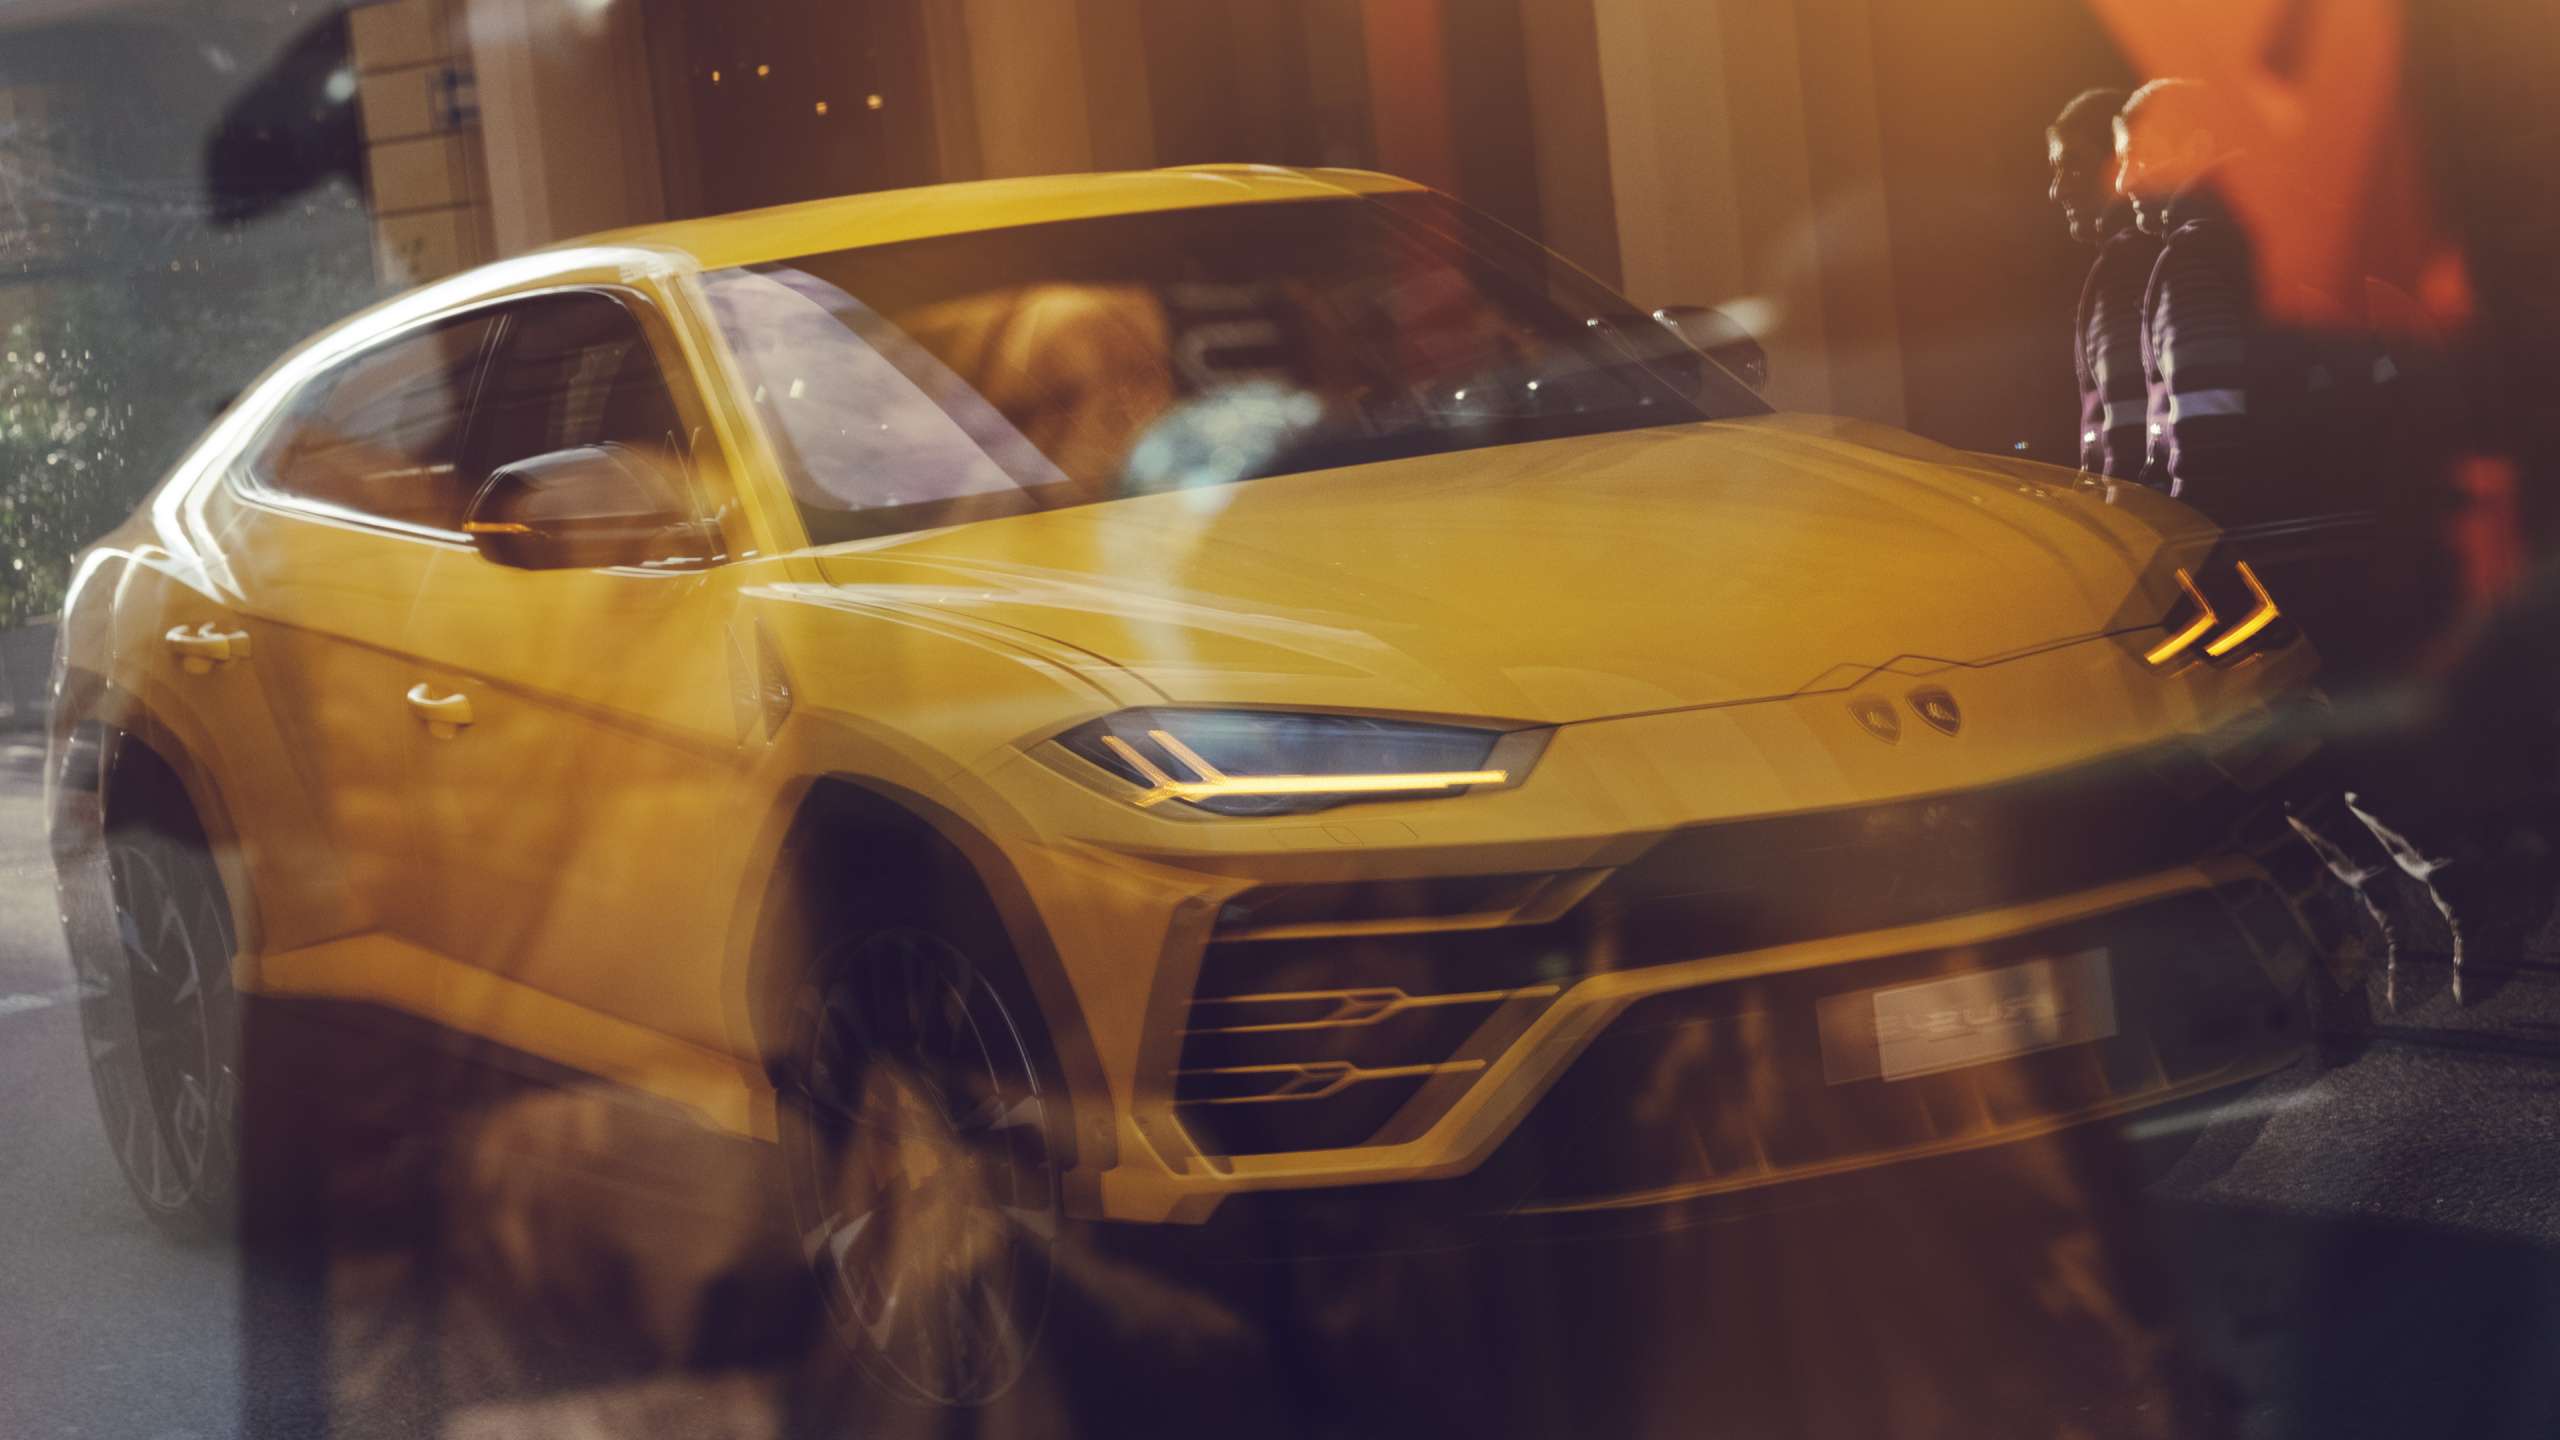 汽车展, 2019兰博基尼Urus, 兰博基尼, 黄色的, 超级跑车 壁纸 2560x1440 允许